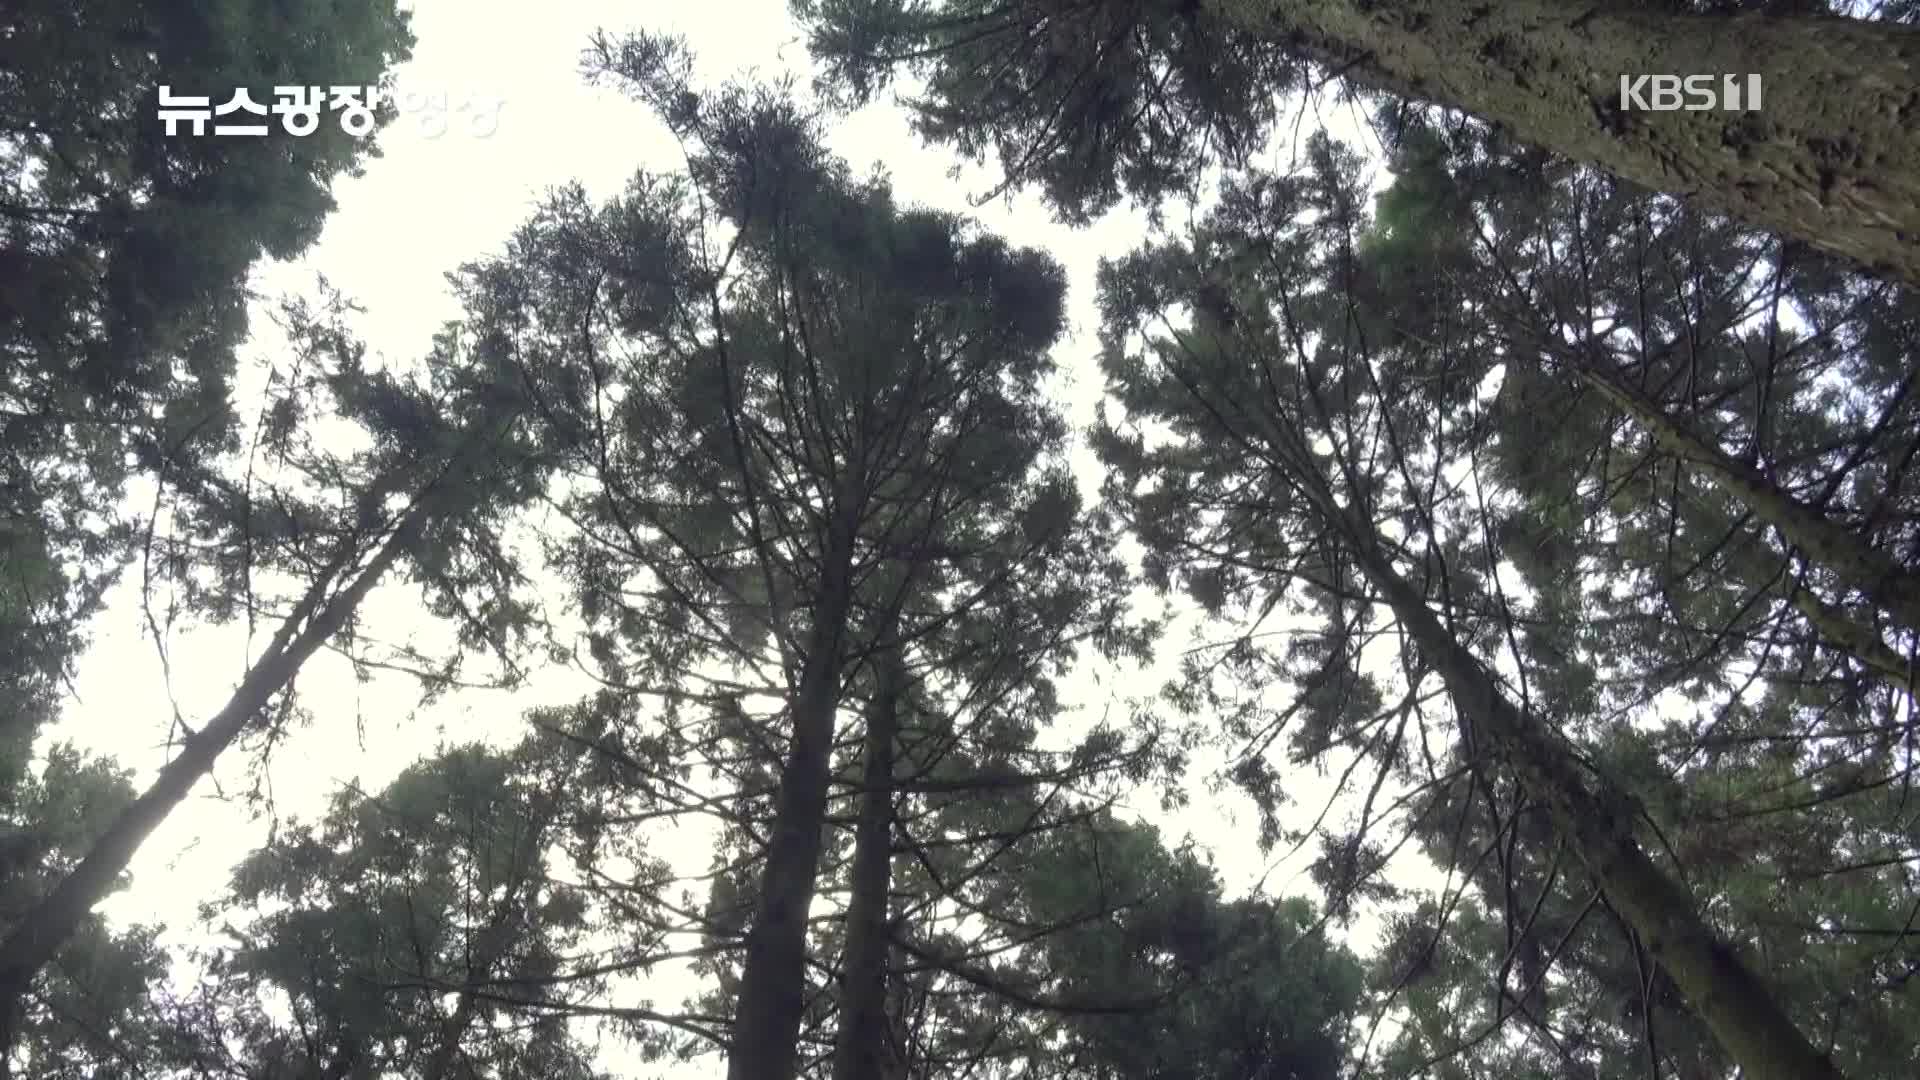 [뉴스광장 영상] 사려니숲길